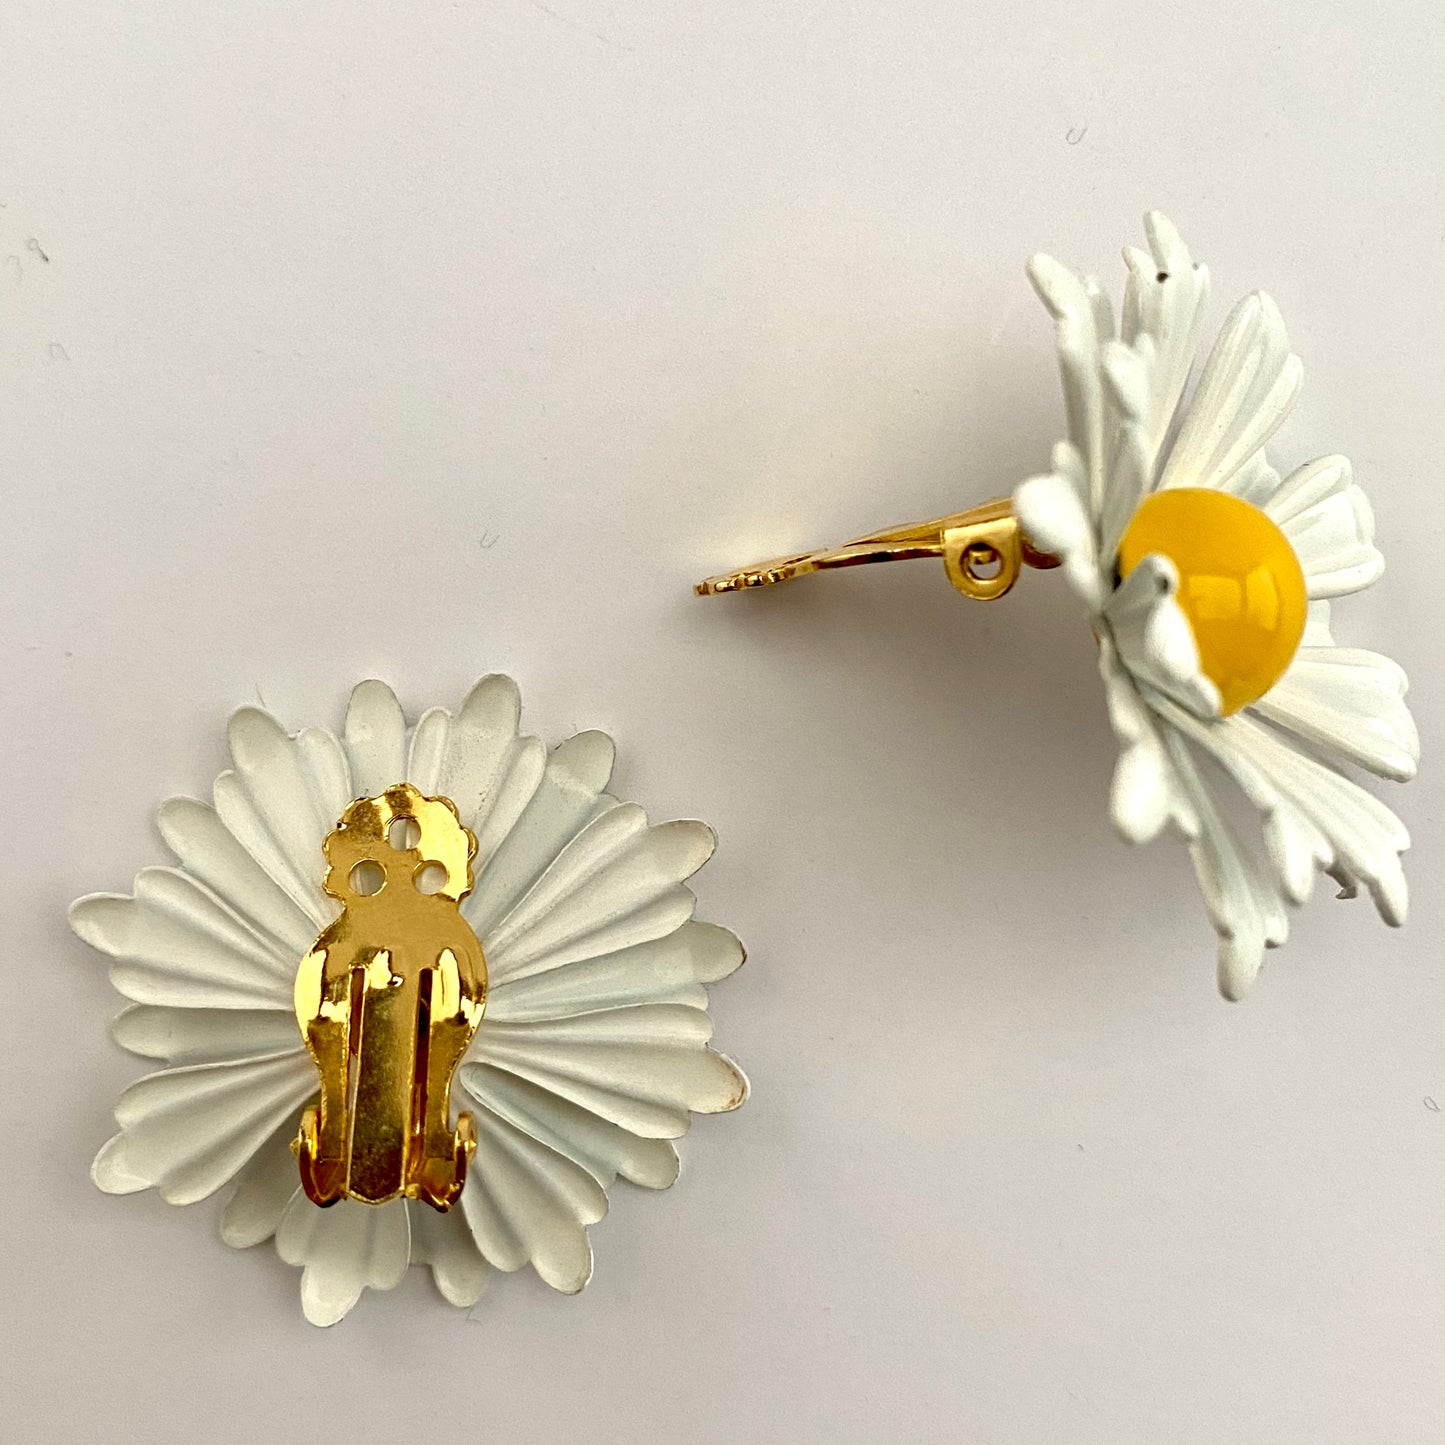 Late 60s/ Early 70s Daisy Enamel Flower Earrings